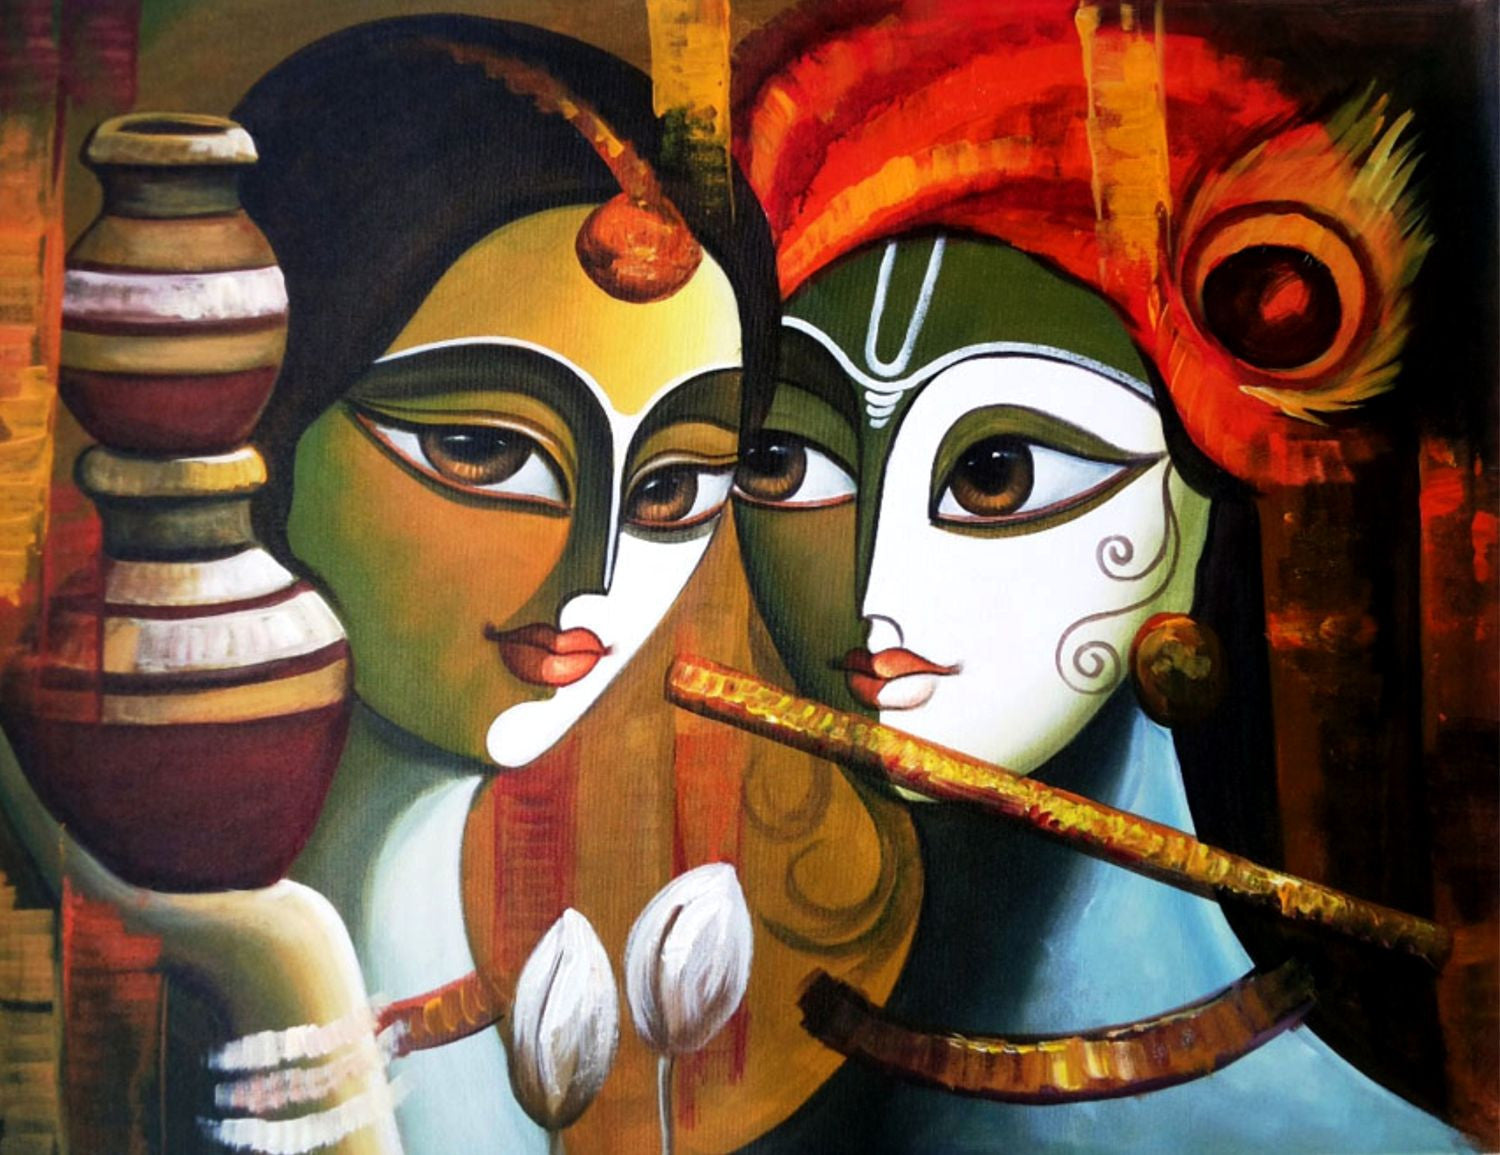 Indian Art - Radha Krishna Painting 2 by Raghuraman | Buy Posters ...